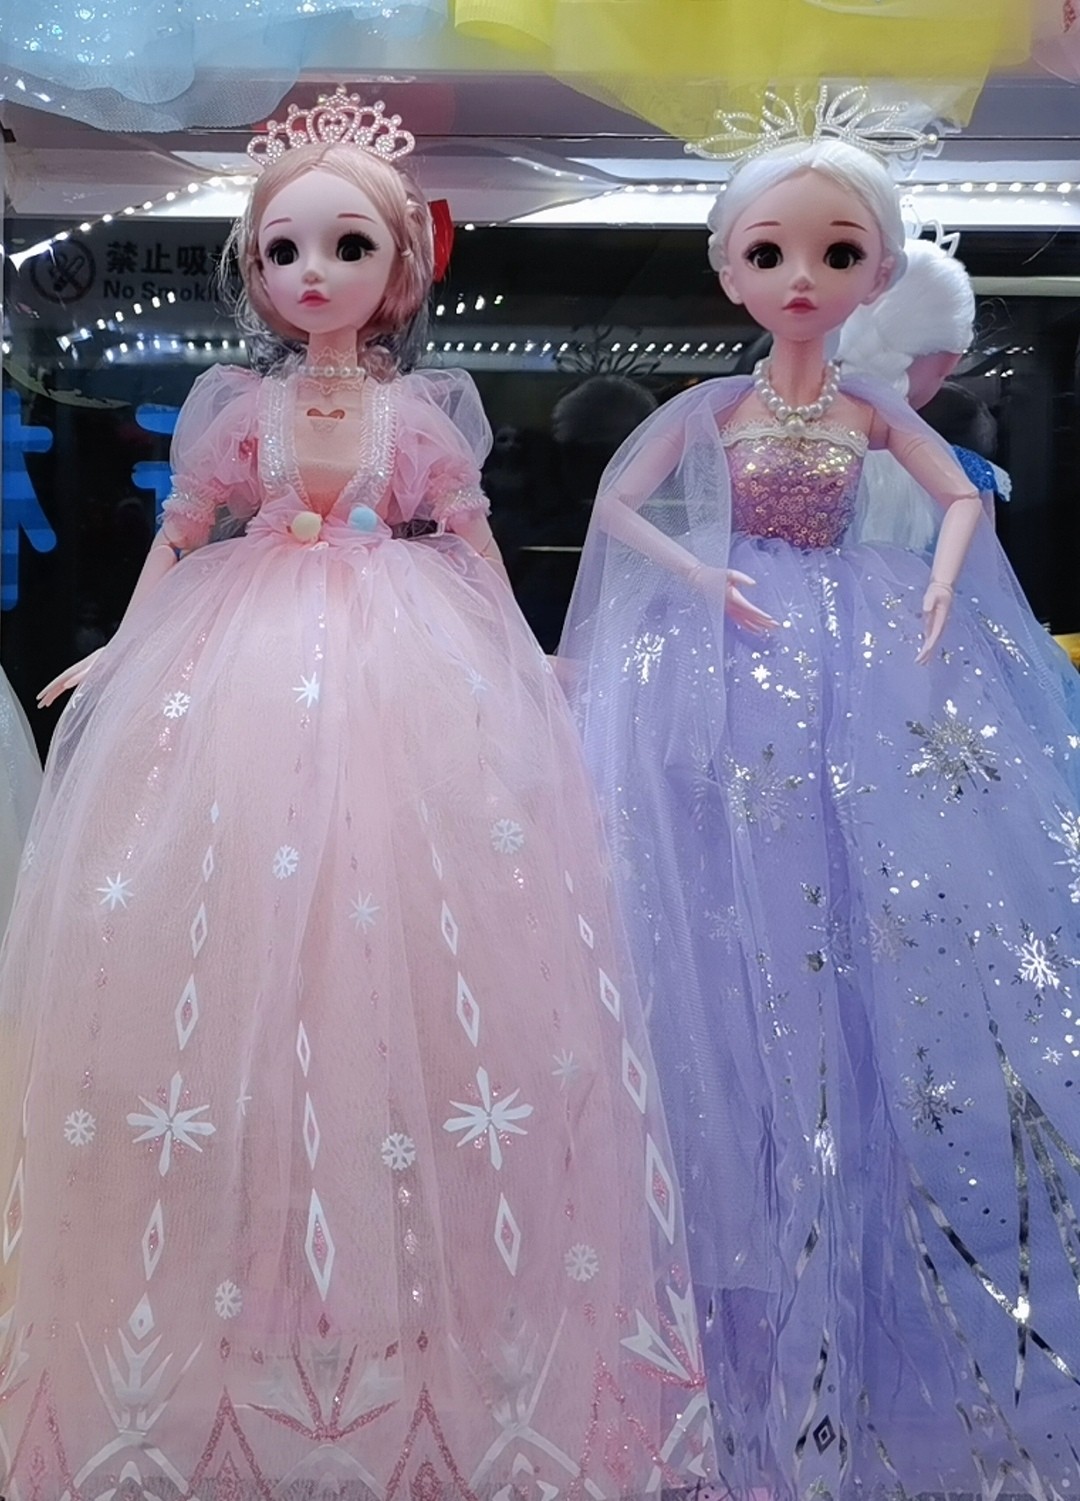 义乌市志刚玩具商行批发销售新机缘芭比洋娃娃，音乐娃娃、钥匙扣娃娃等产品